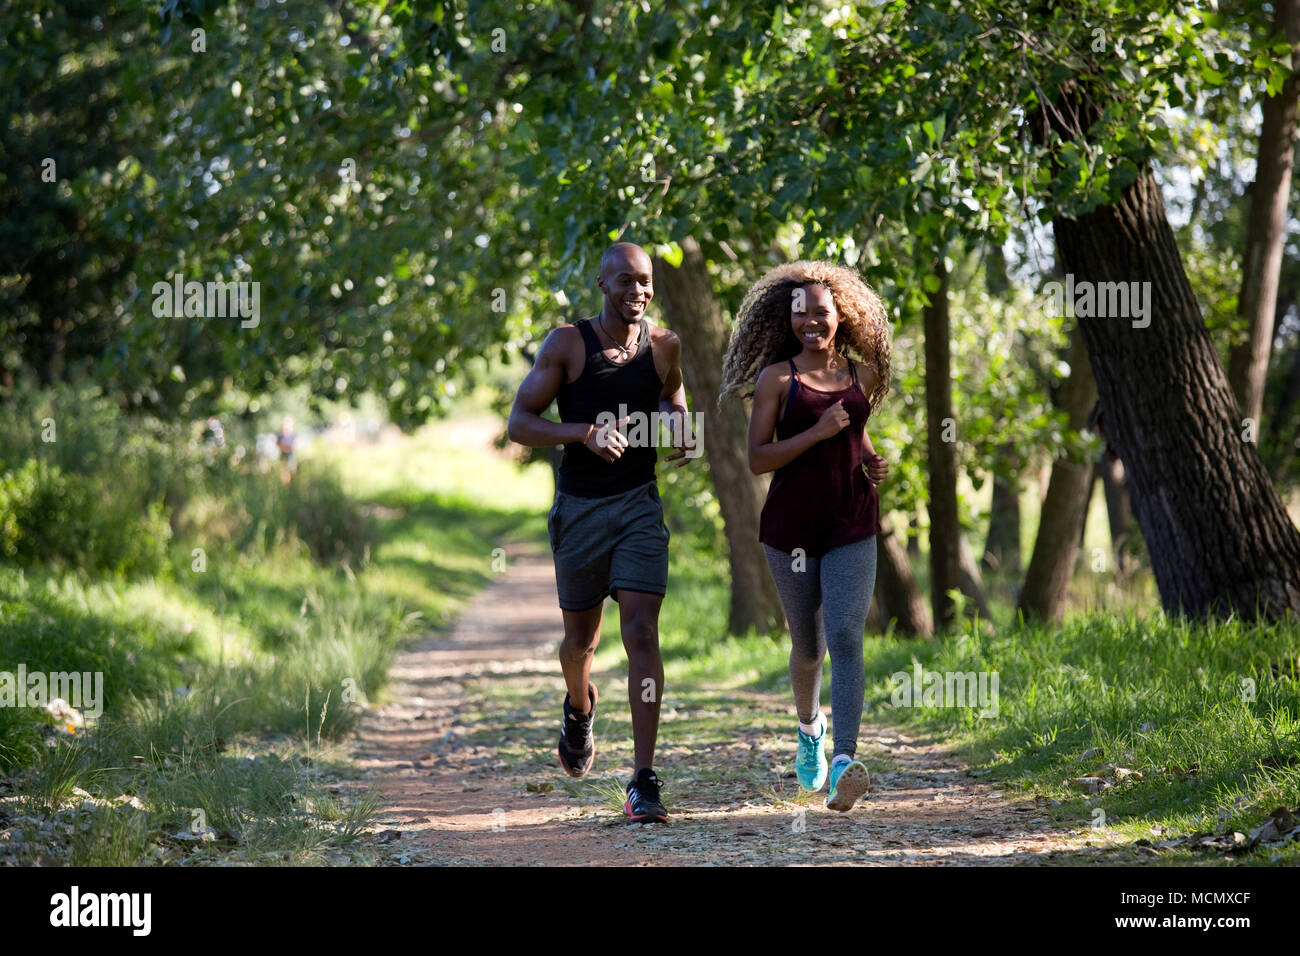 L'homme et la femme du jogging dans un parc Banque D'Images